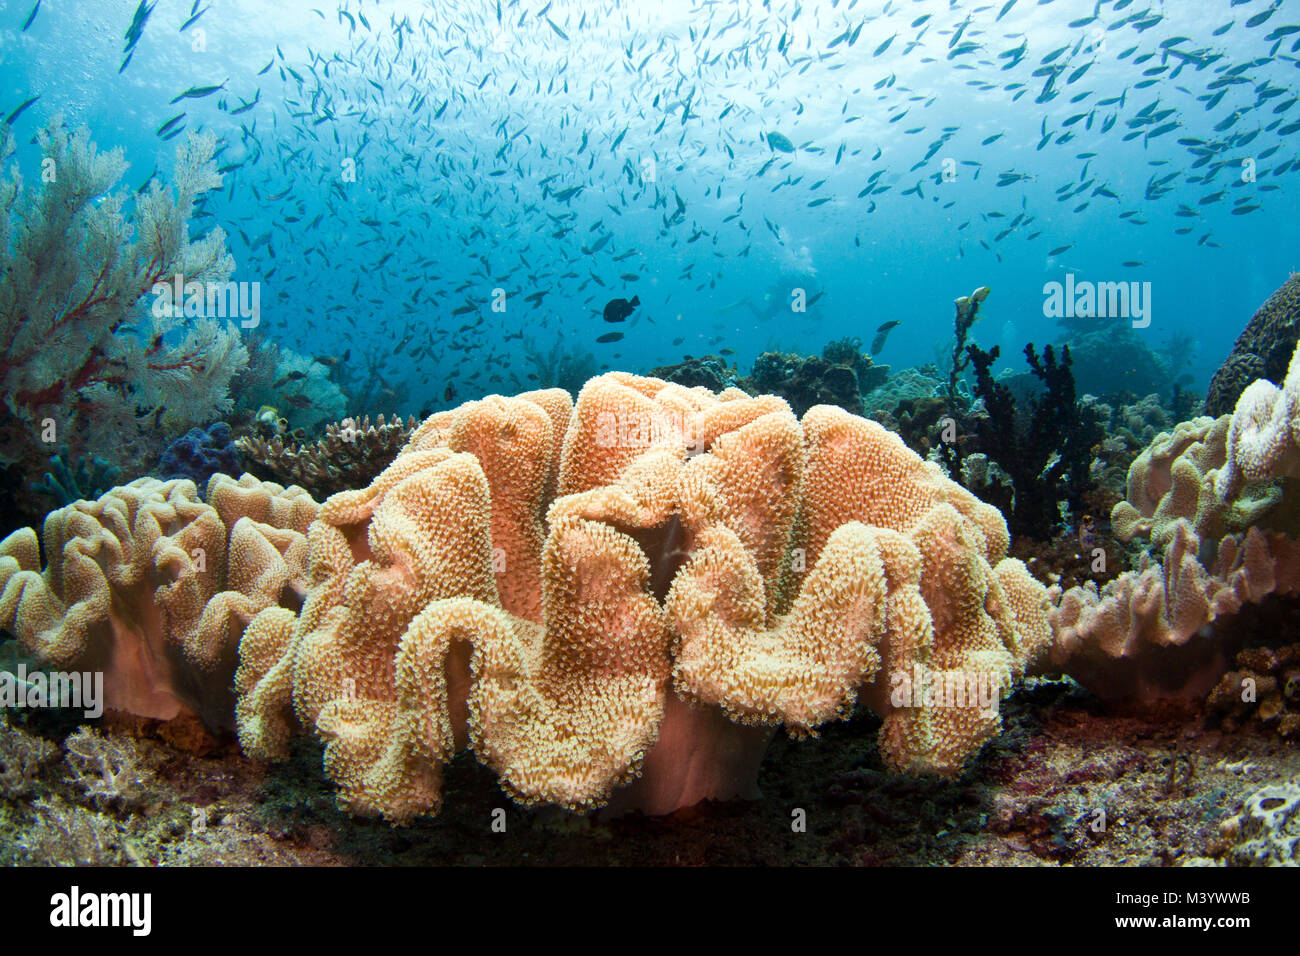 Les récifs coralliens de l'Indo-Pacifique la biodiversité la plus grande jamais enregistrée dans un habitat océanique. Banque D'Images